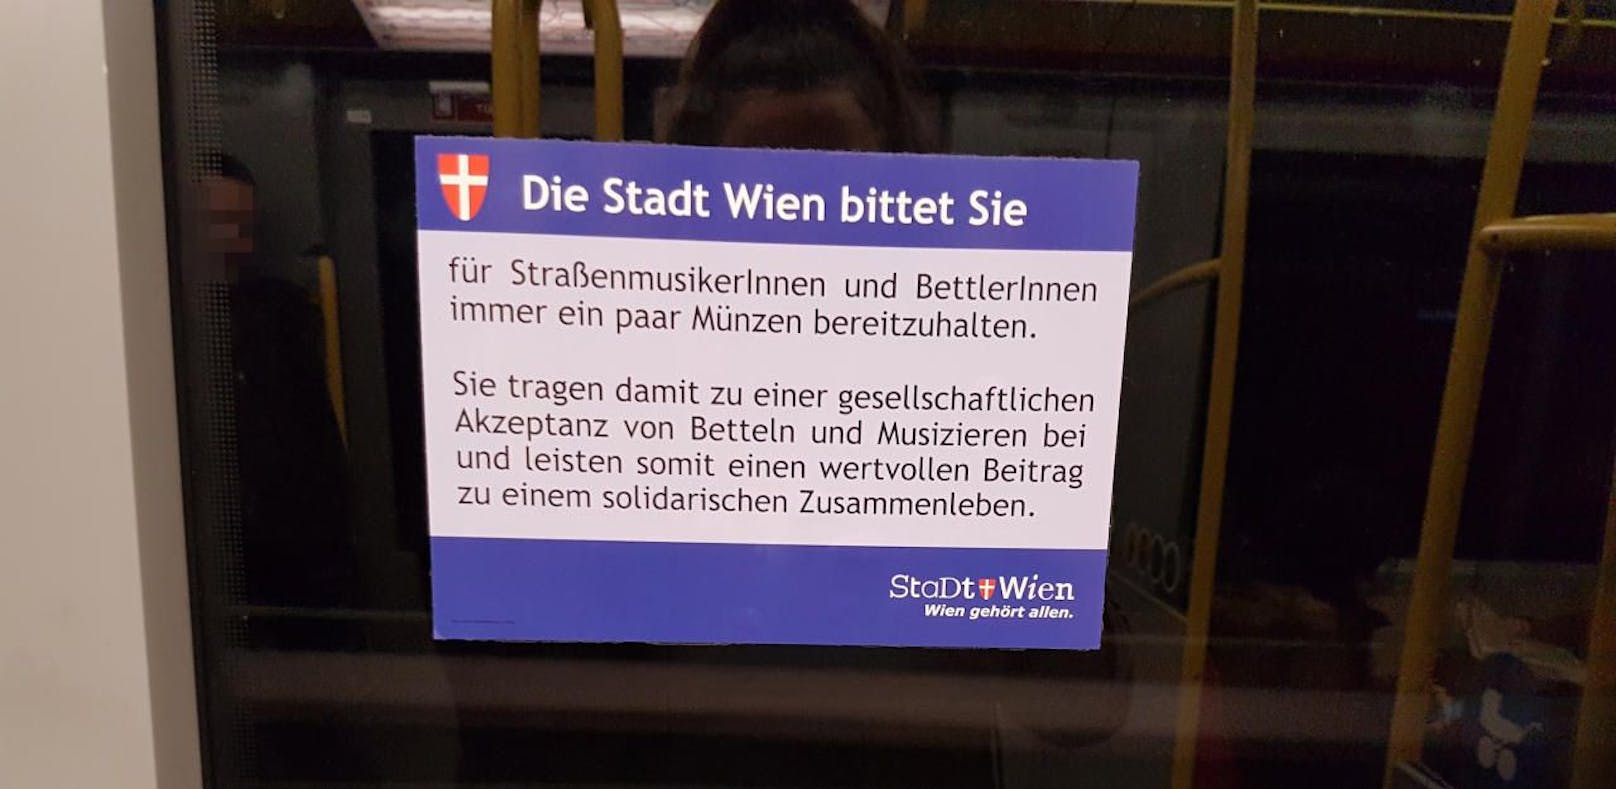 Dieser Hinweis stammt nicht von der Stadt Wien, es handelt sich um eine Fälschung.